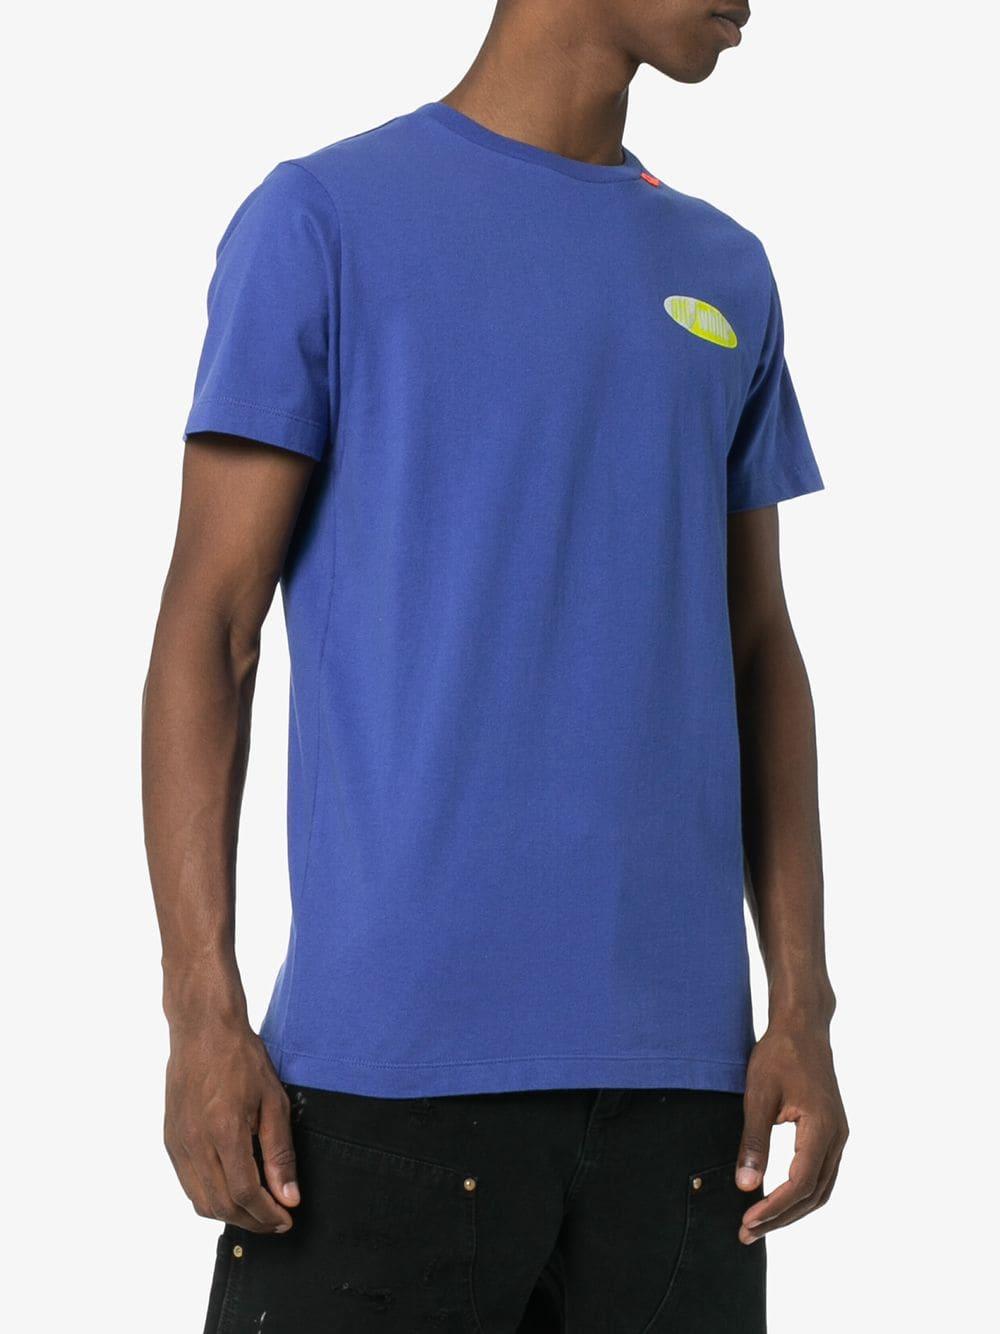 Off-White c/o Virgil Abloh Logo Printed T-shirt in Blue for Men - Lyst